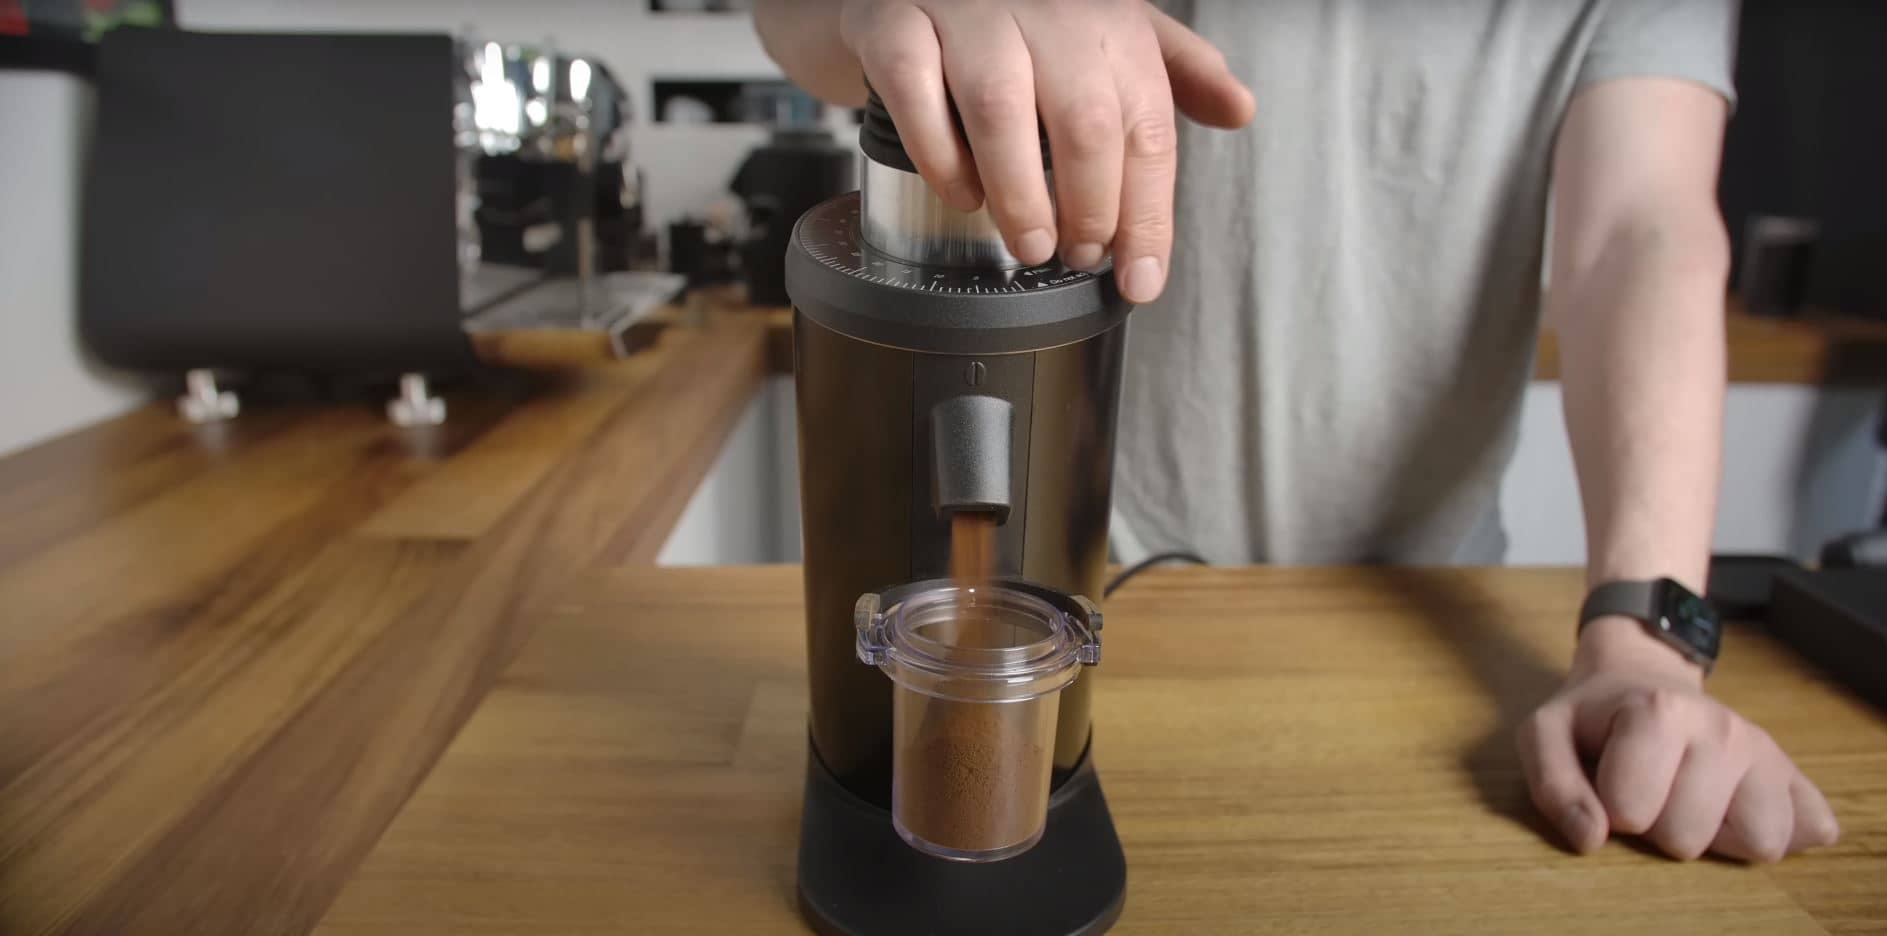 coffee grinder grinding beans